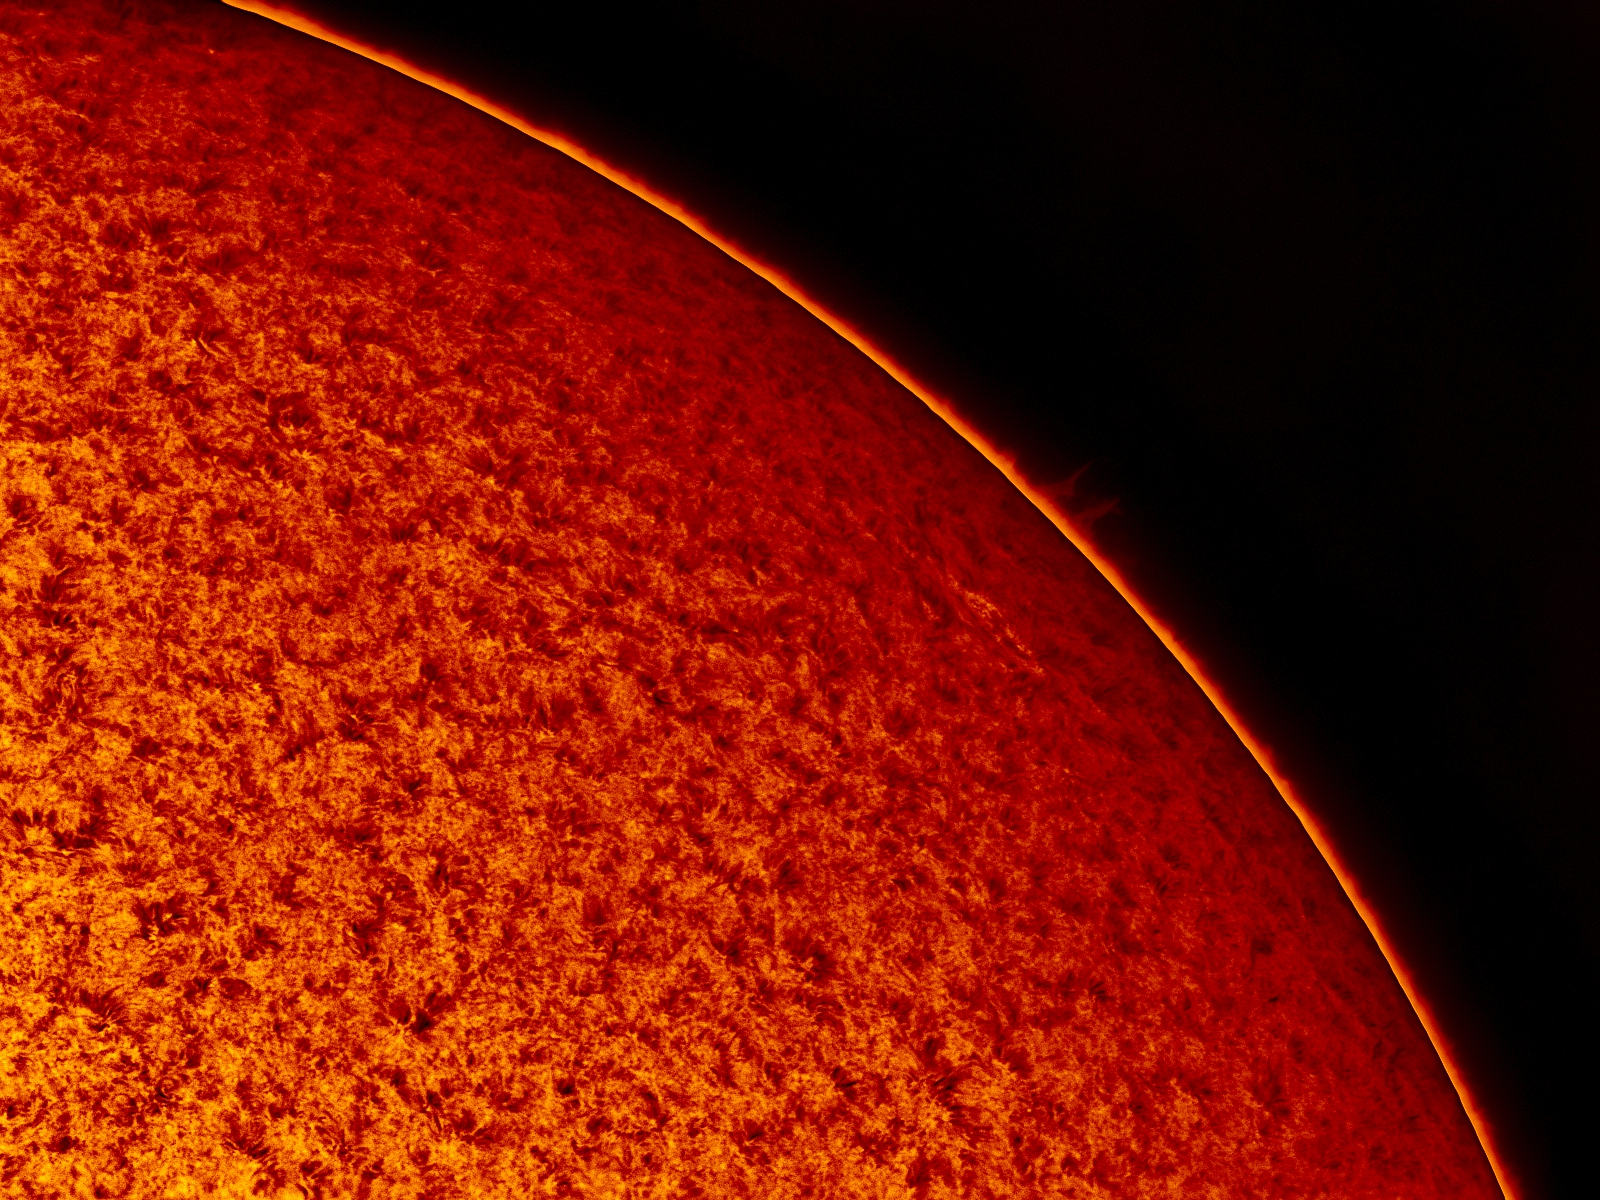 Солнце 4 апреля. Снимки солнца. Солнце Астрофото. Ядро солнца фото. Лучшие снимки солнца в разрезе.